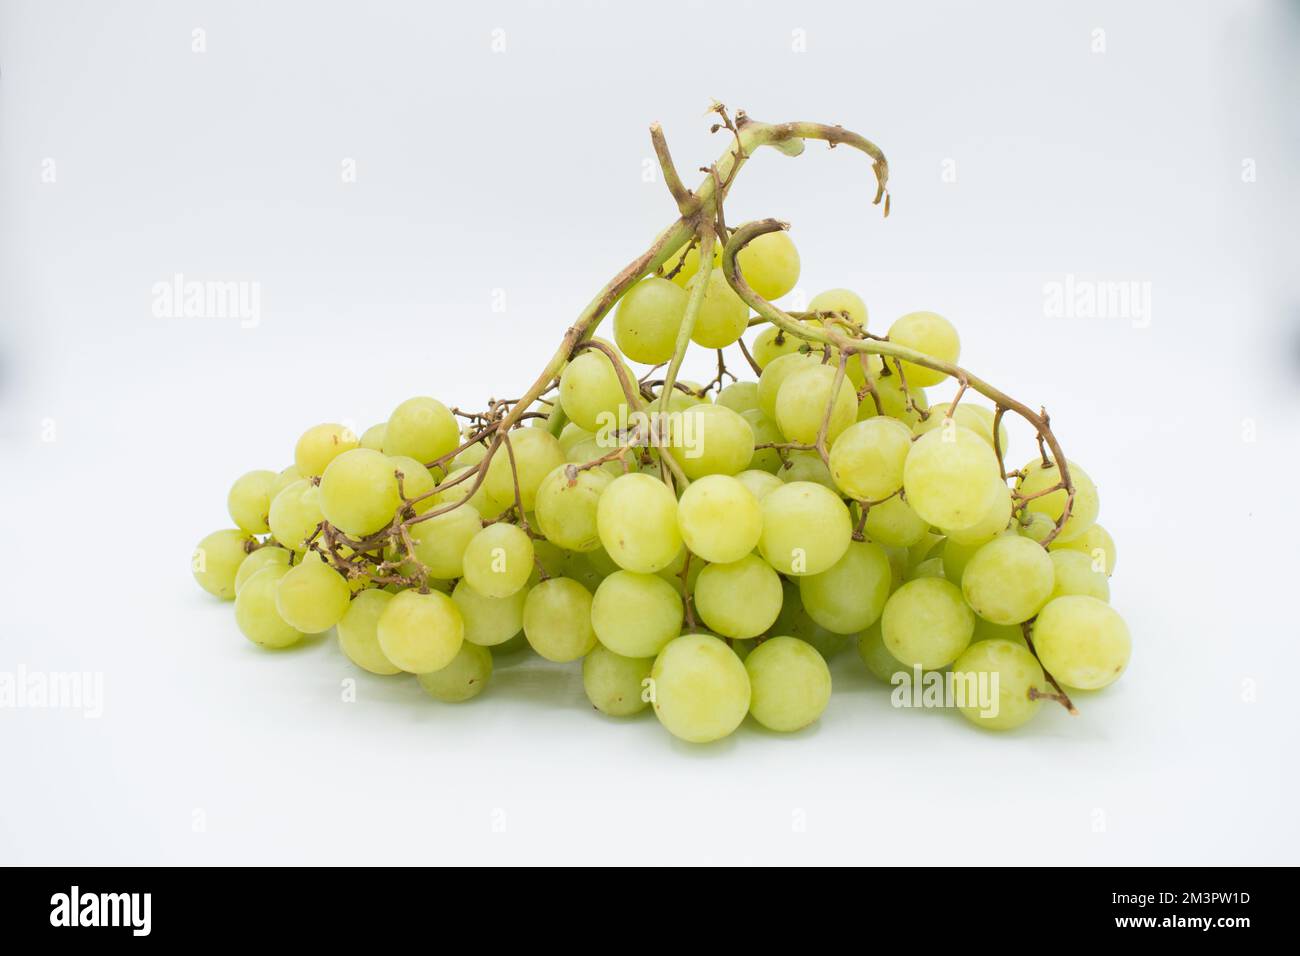 Grappolo di uva verde su sfondo bianco Foto Stock